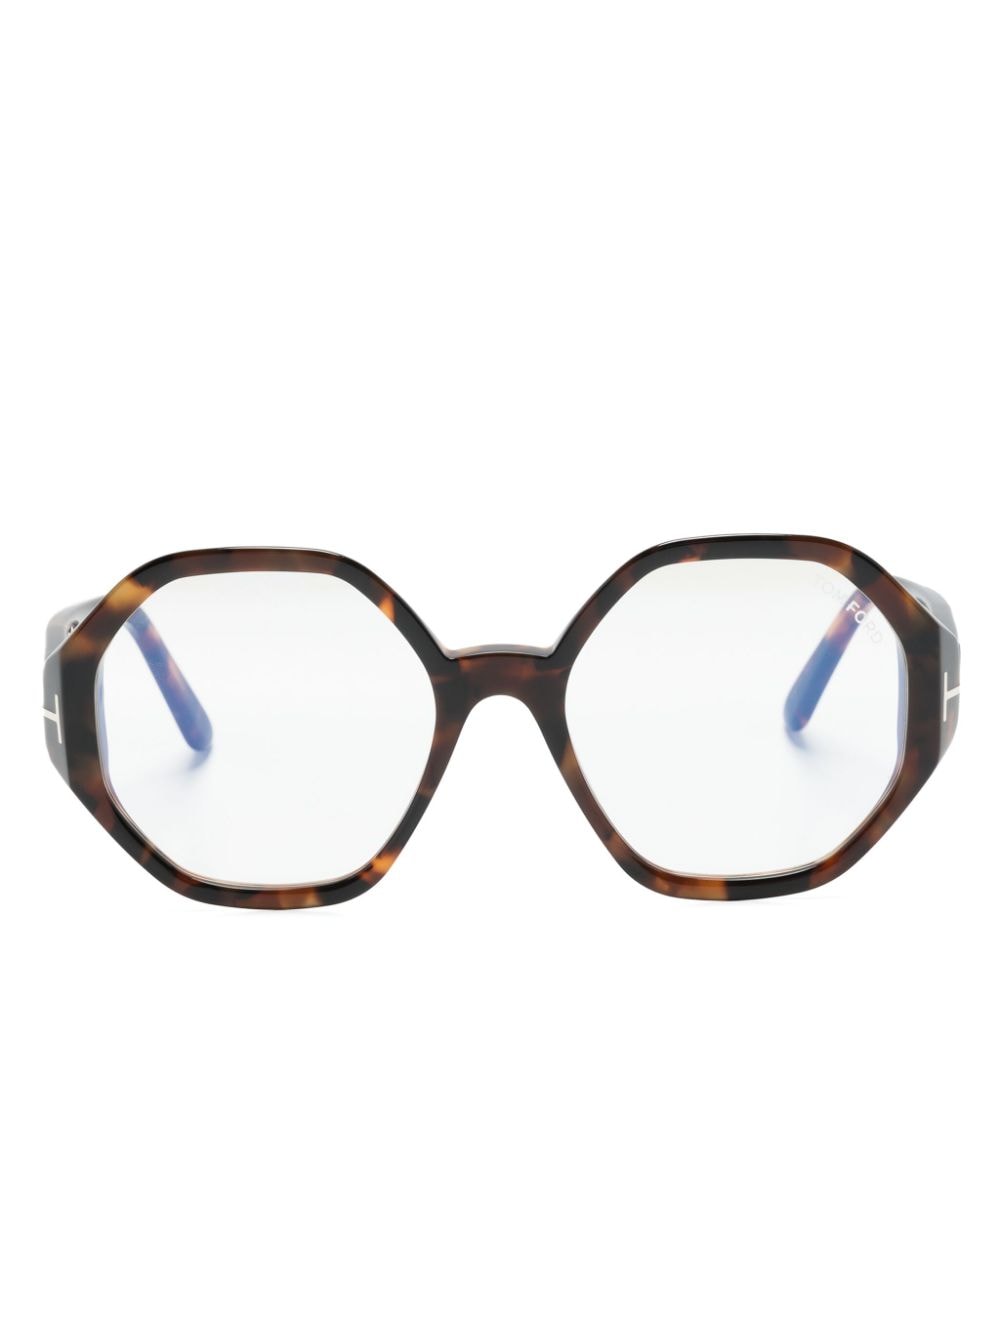 TOM FORD Eyewear Brille mit geometrischem Gestell - Braun